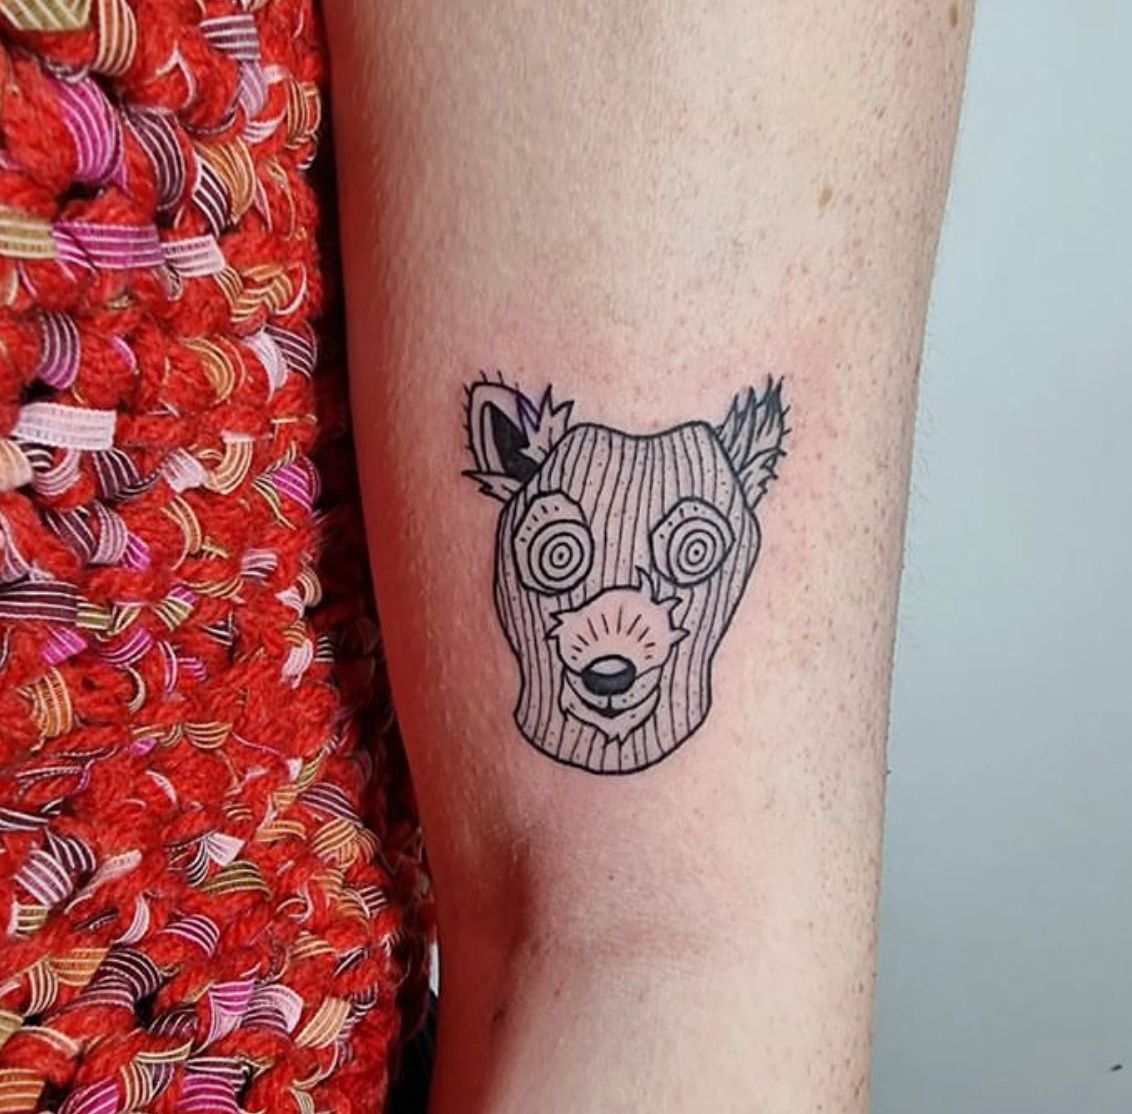 Ash fantastic mr fox tattoo